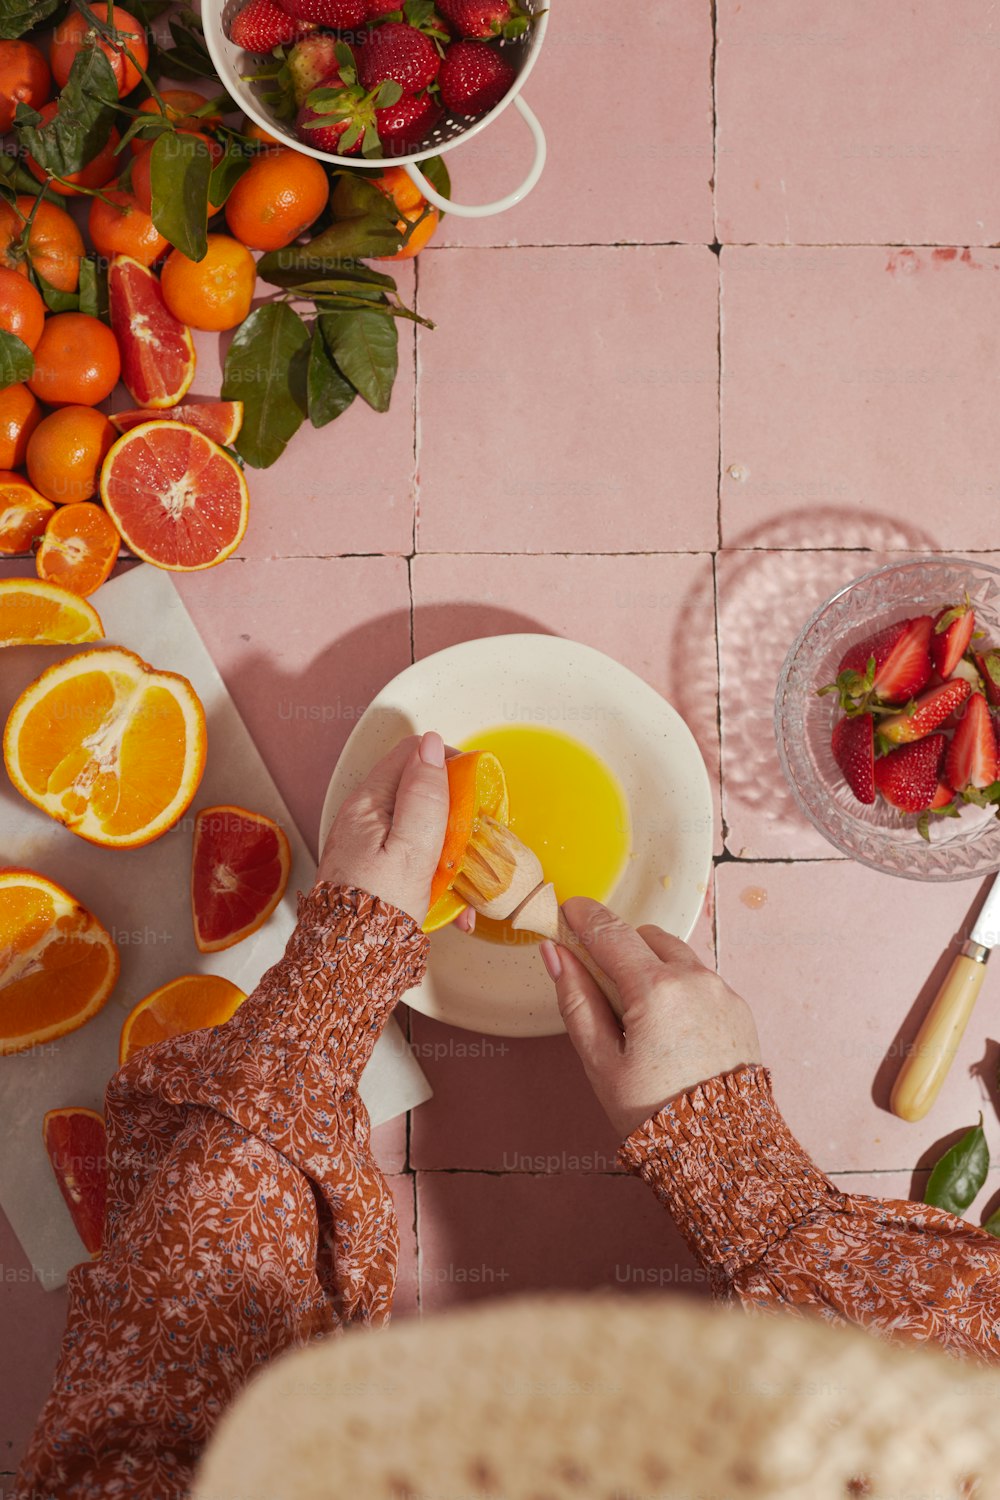 a woman is peeling an orange slice on a plate